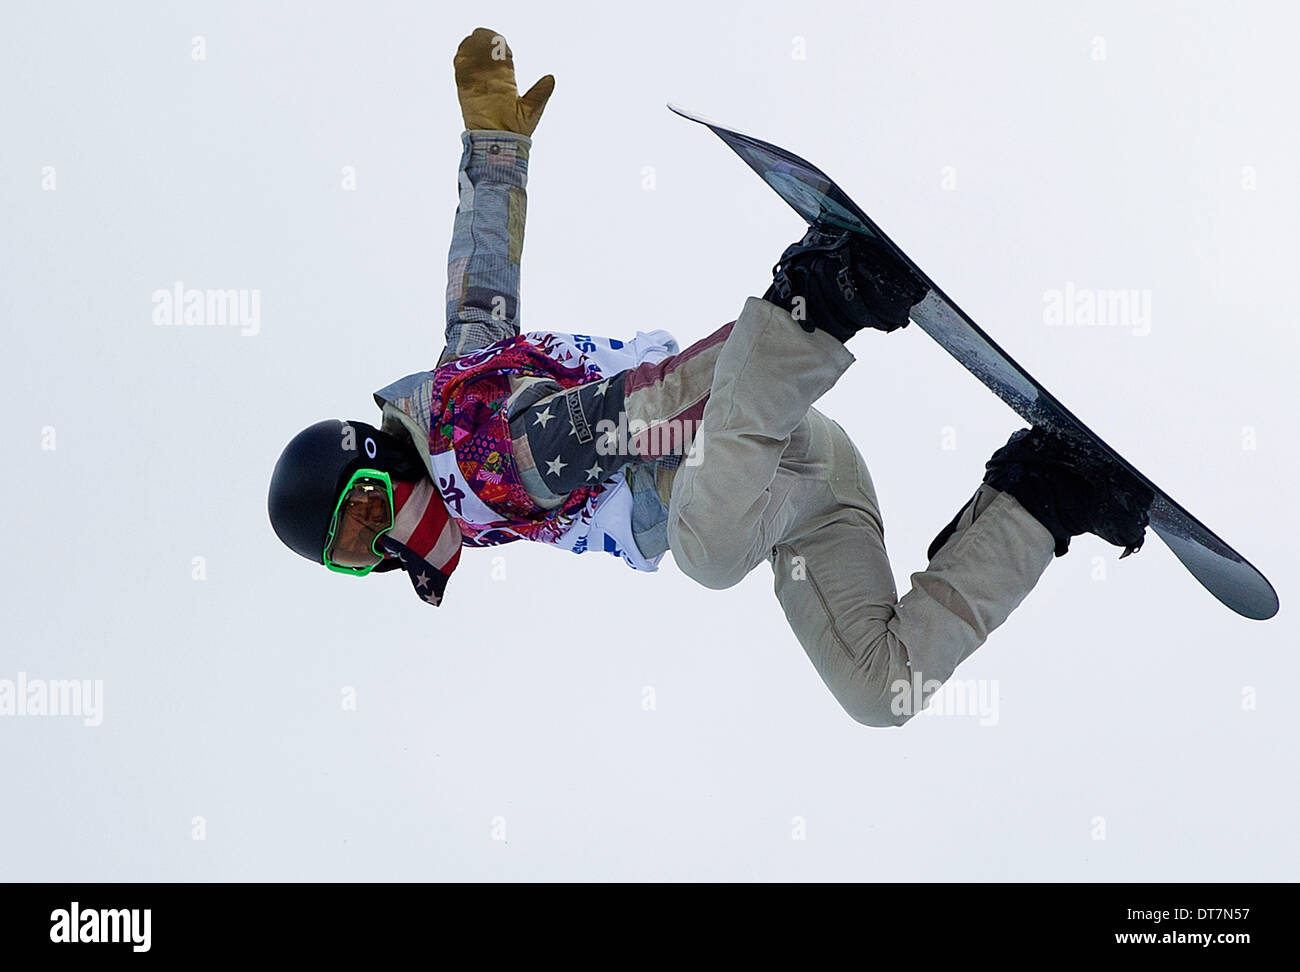 Sochi, Russia. 11th Feb, 2014. Mens Snowboard Half Pipe